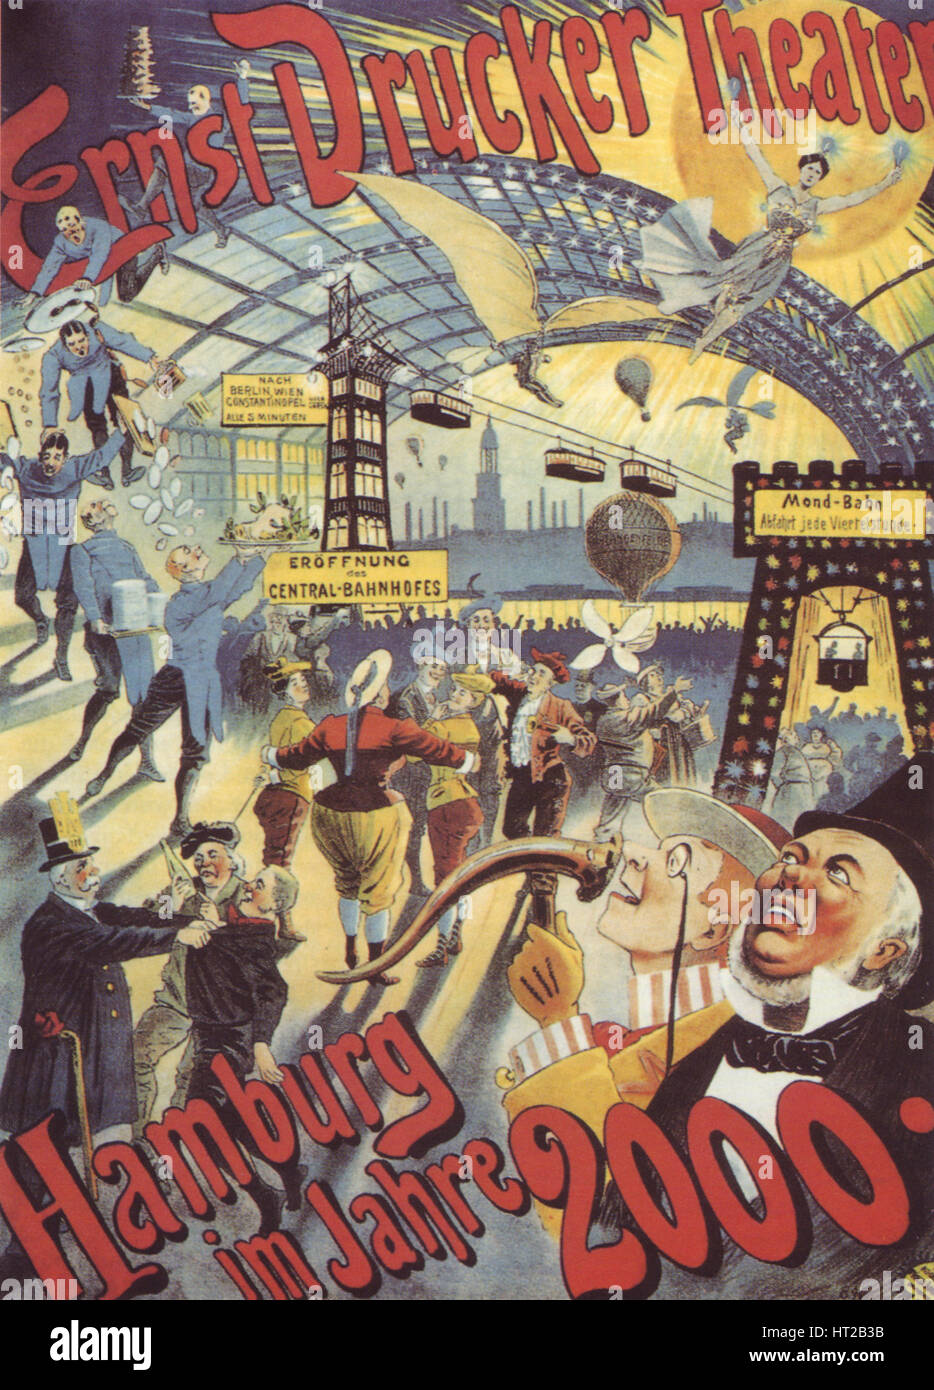 Hamburg in the Year 2000. Poster for the Ernst Drucker Theatre, 1896. Artist: Friedländer, Adolph (1851-1904) Stock Photo